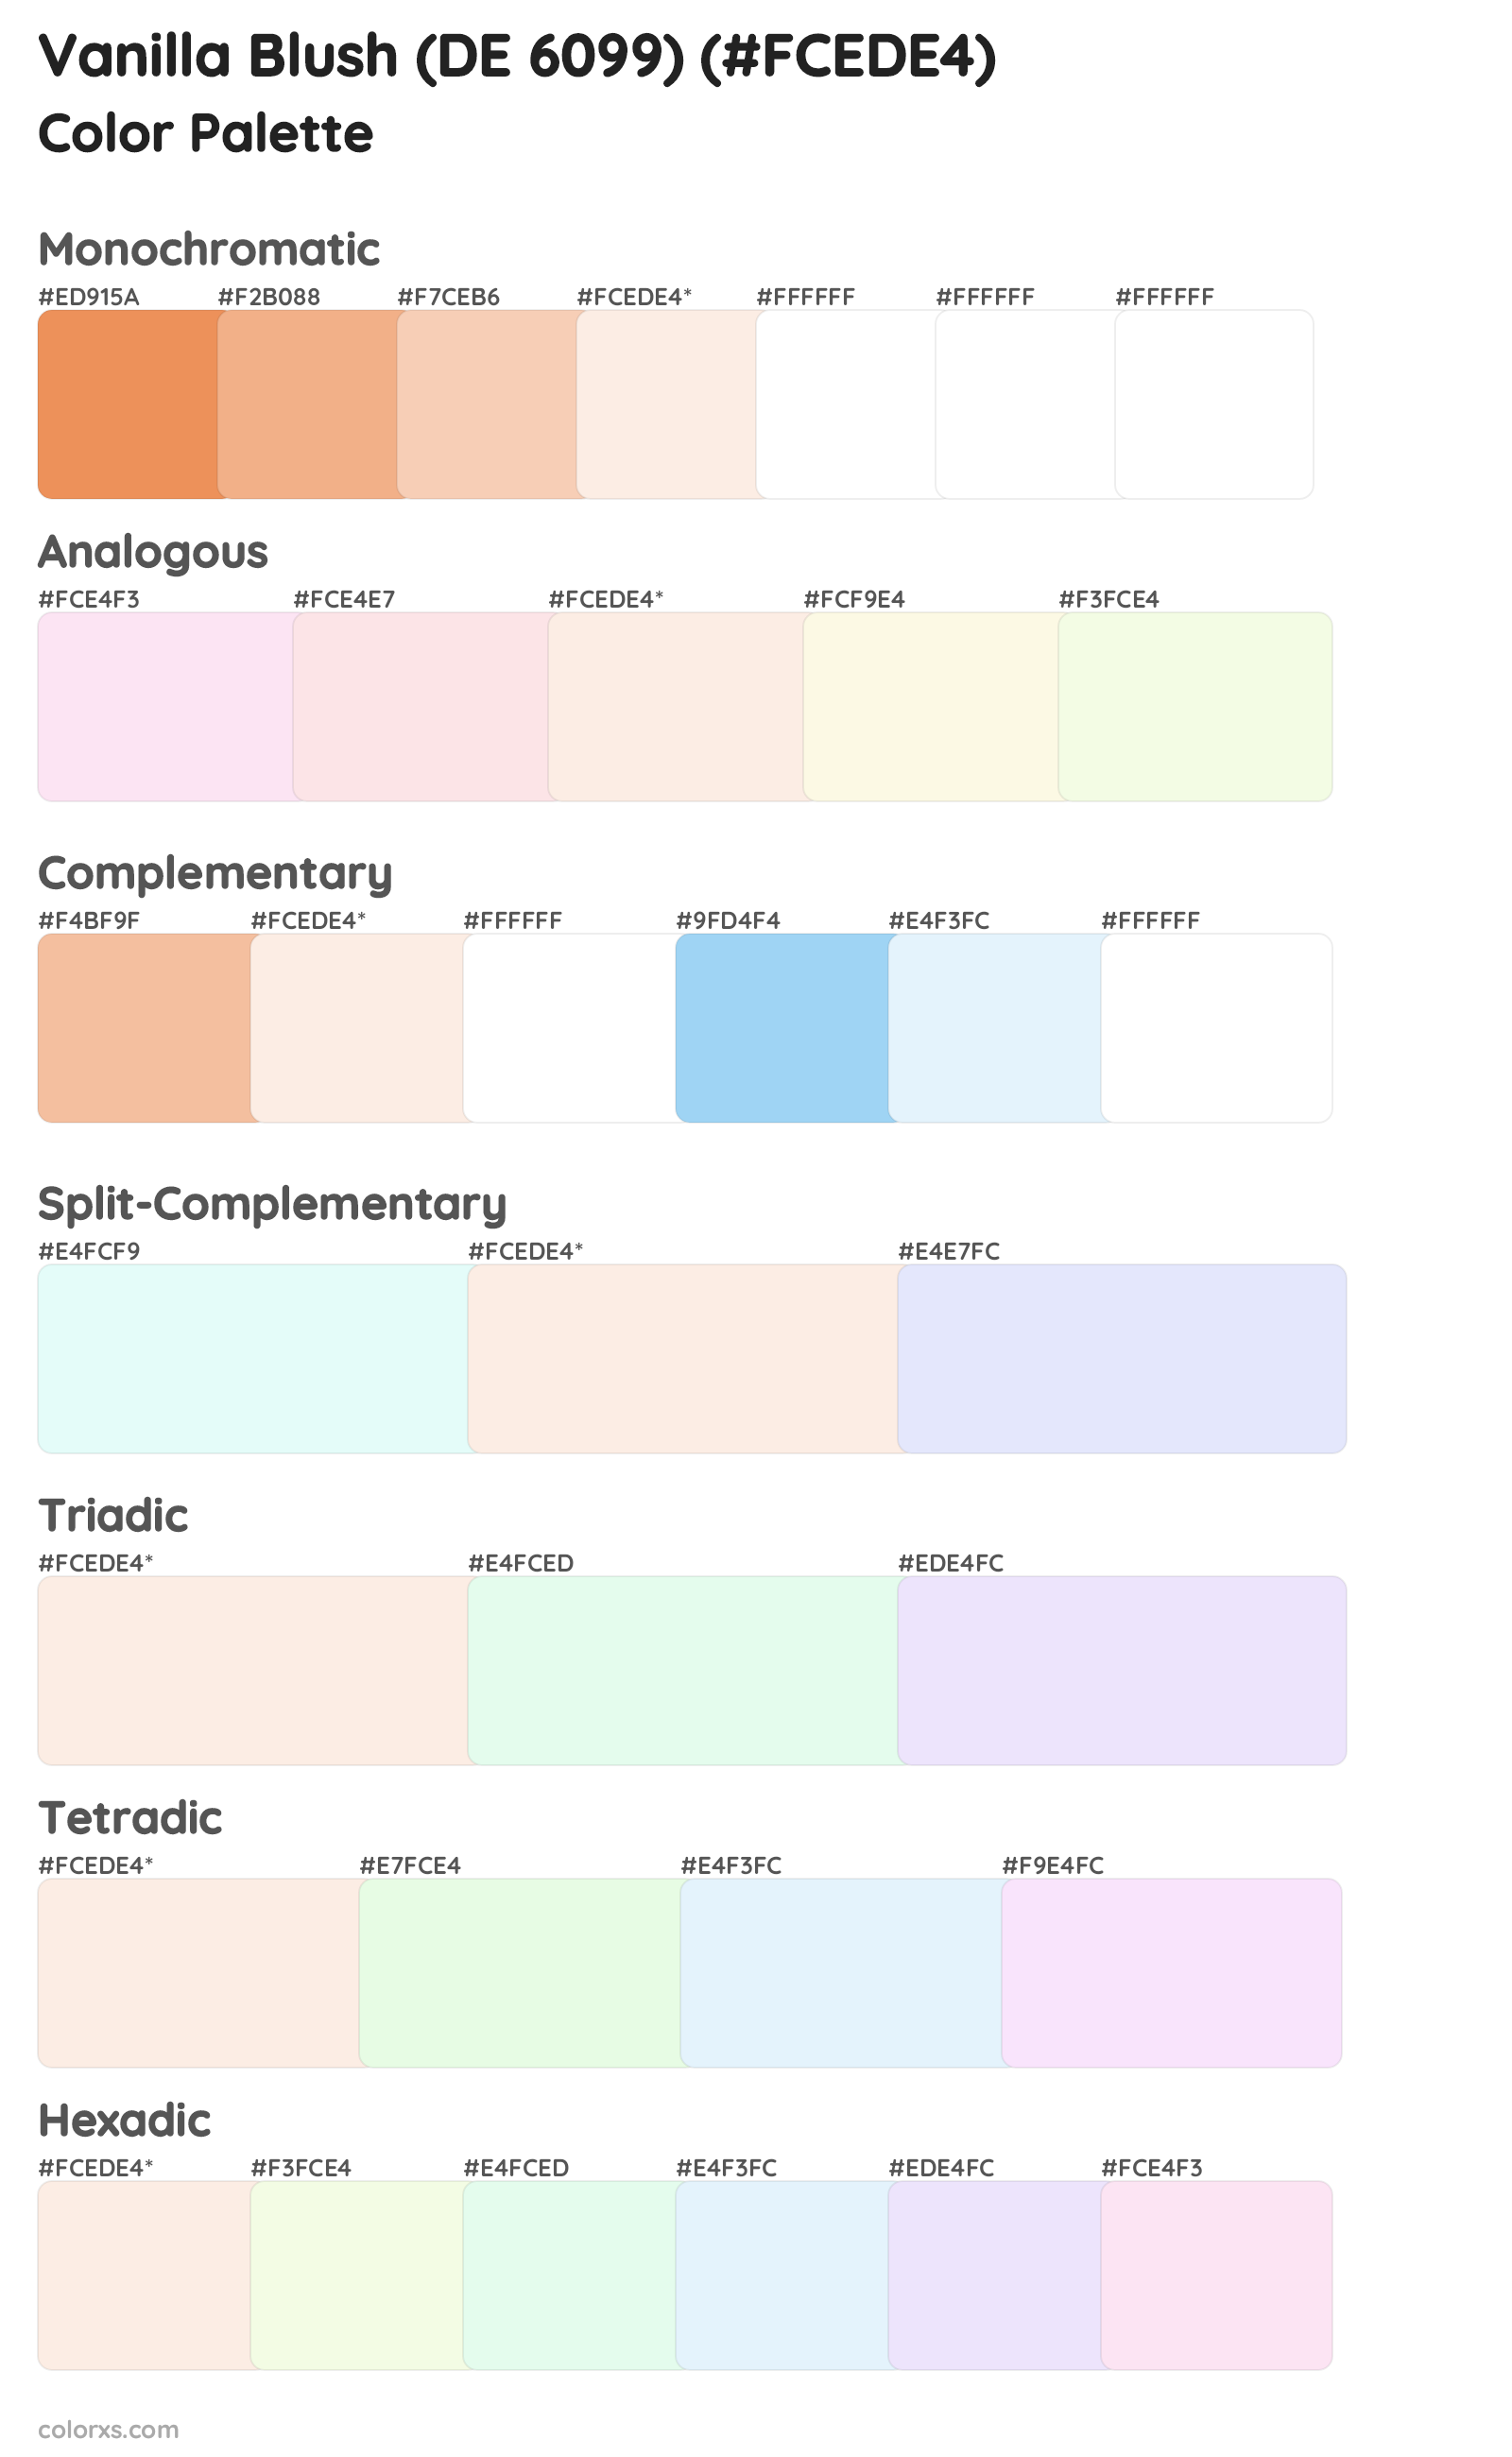 Vanilla Blush (DE 6099) Color Scheme Palettes